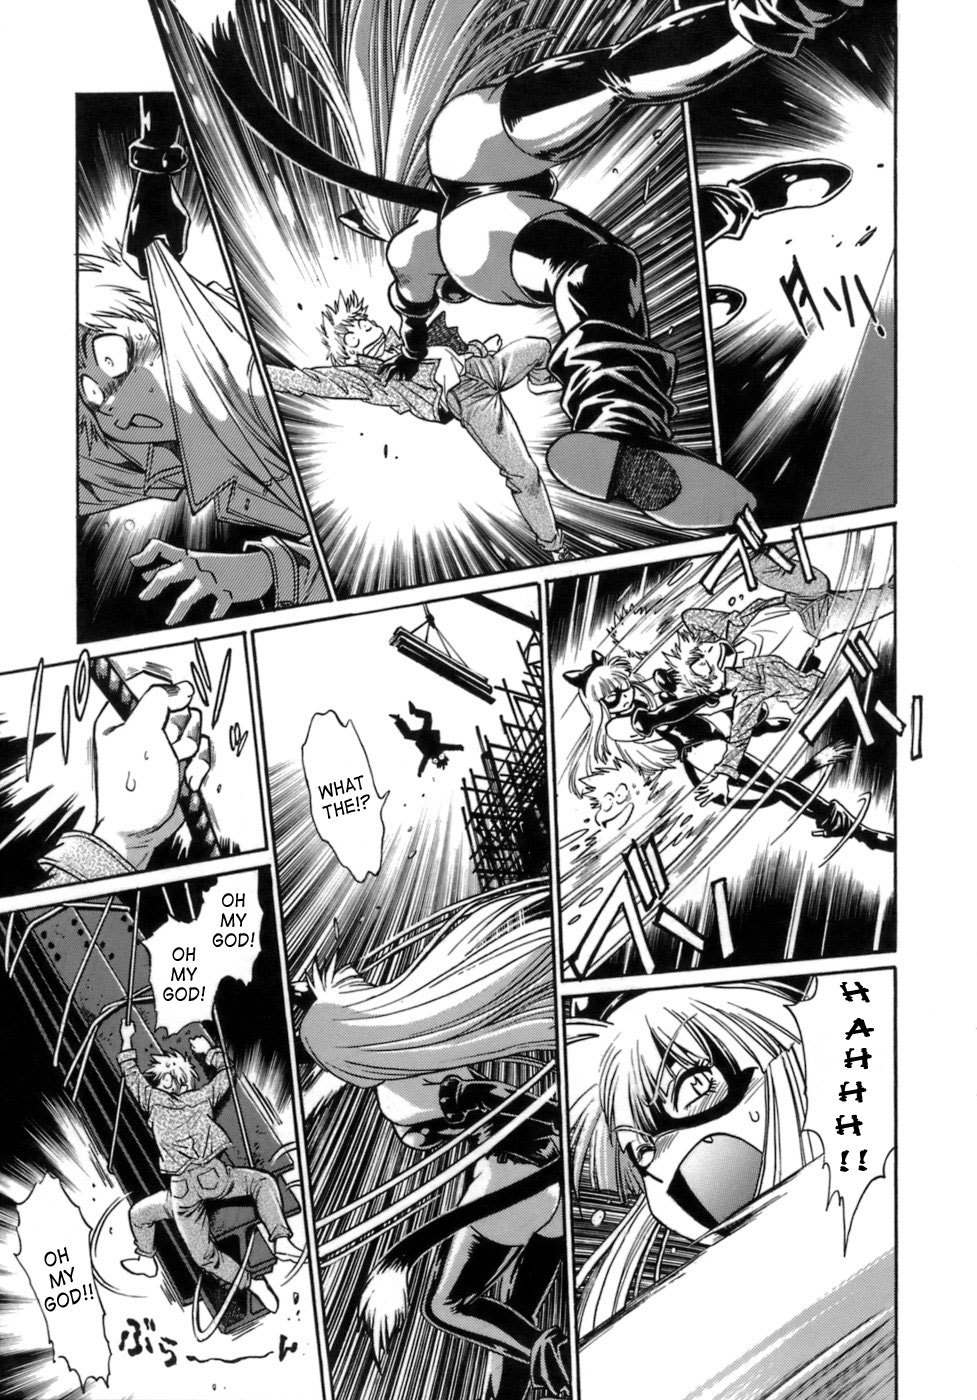 Tail Chaser Vol.1 49 hentai manga